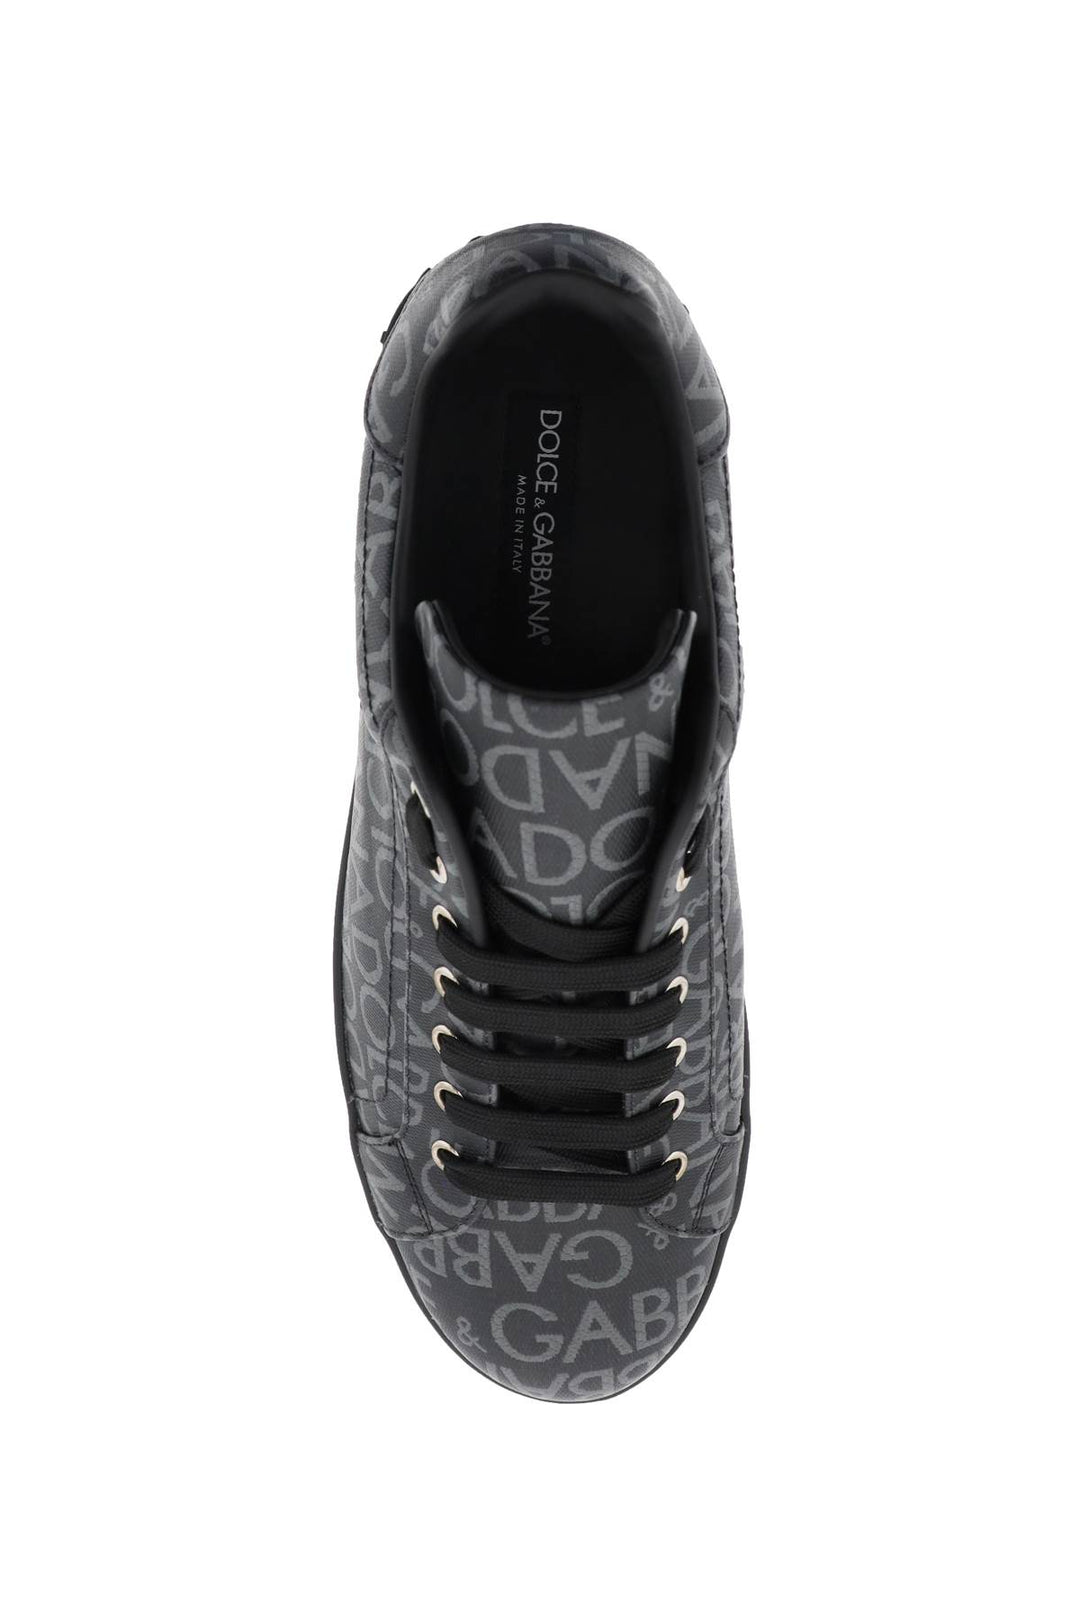 Sneakers Portofino In Jacquard - Dolce & Gabbana - Uomo